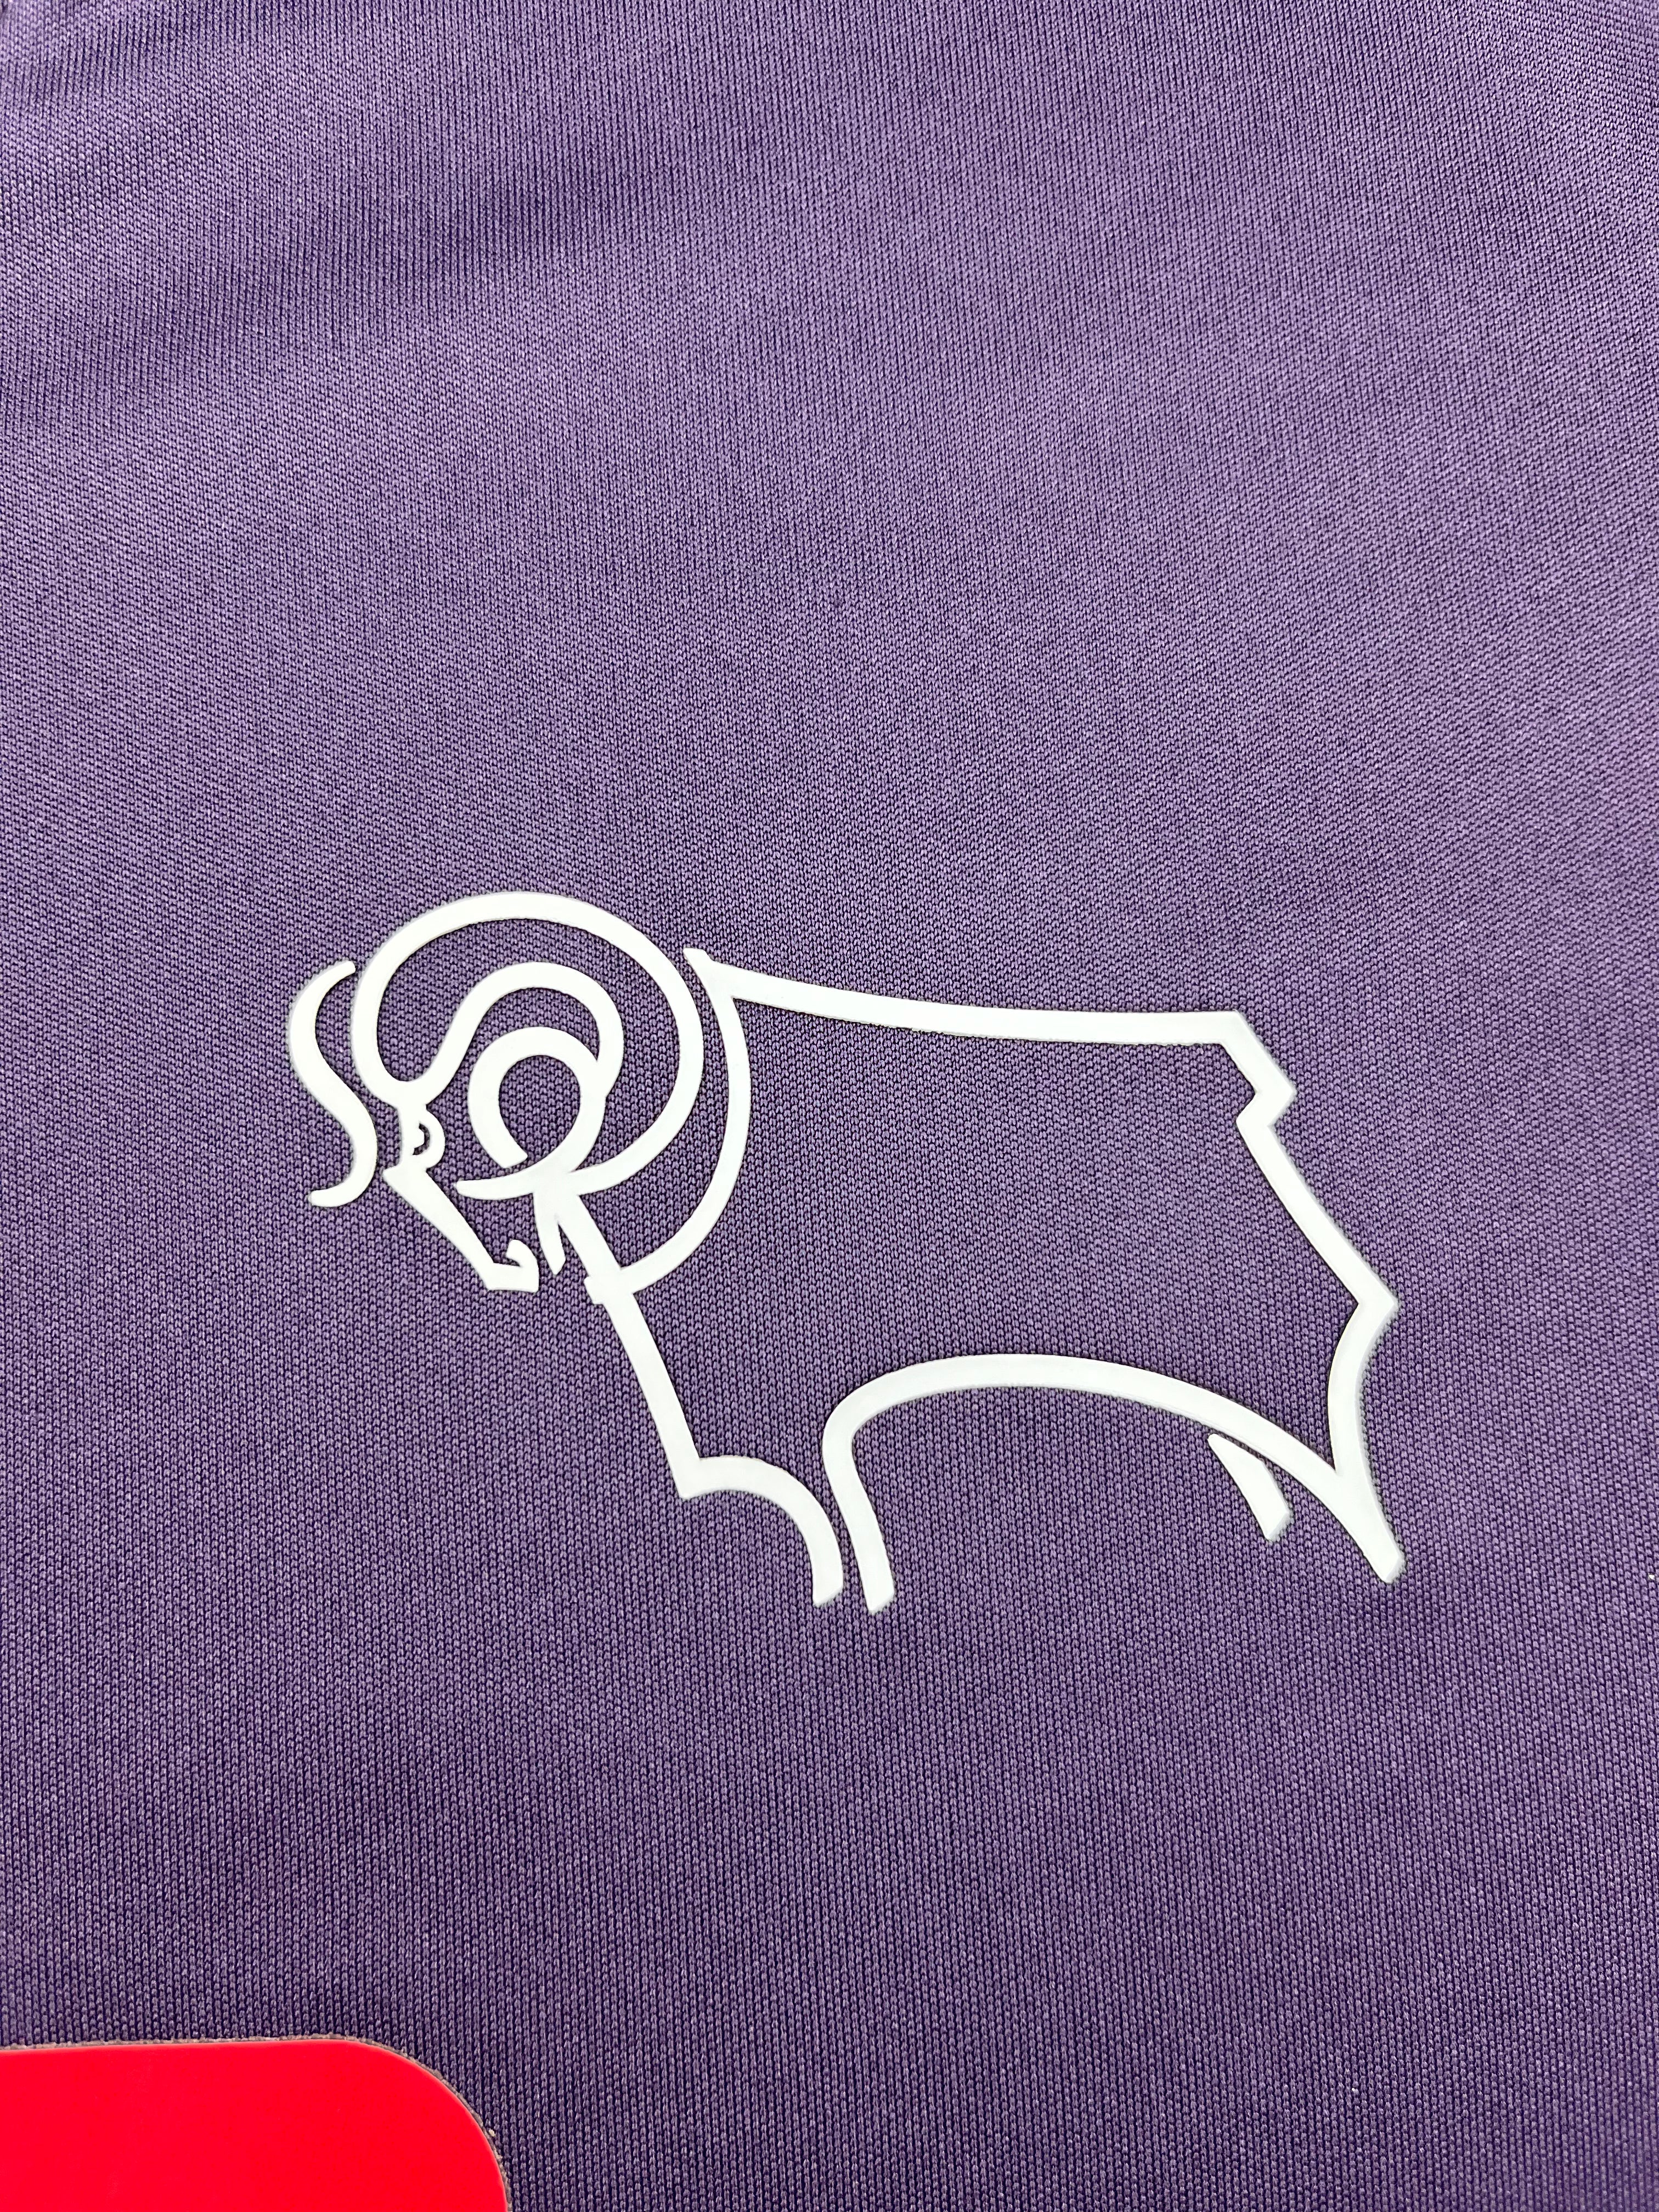 Camiseta visitante del Derby County 2015/16 (M) 8.5/10 